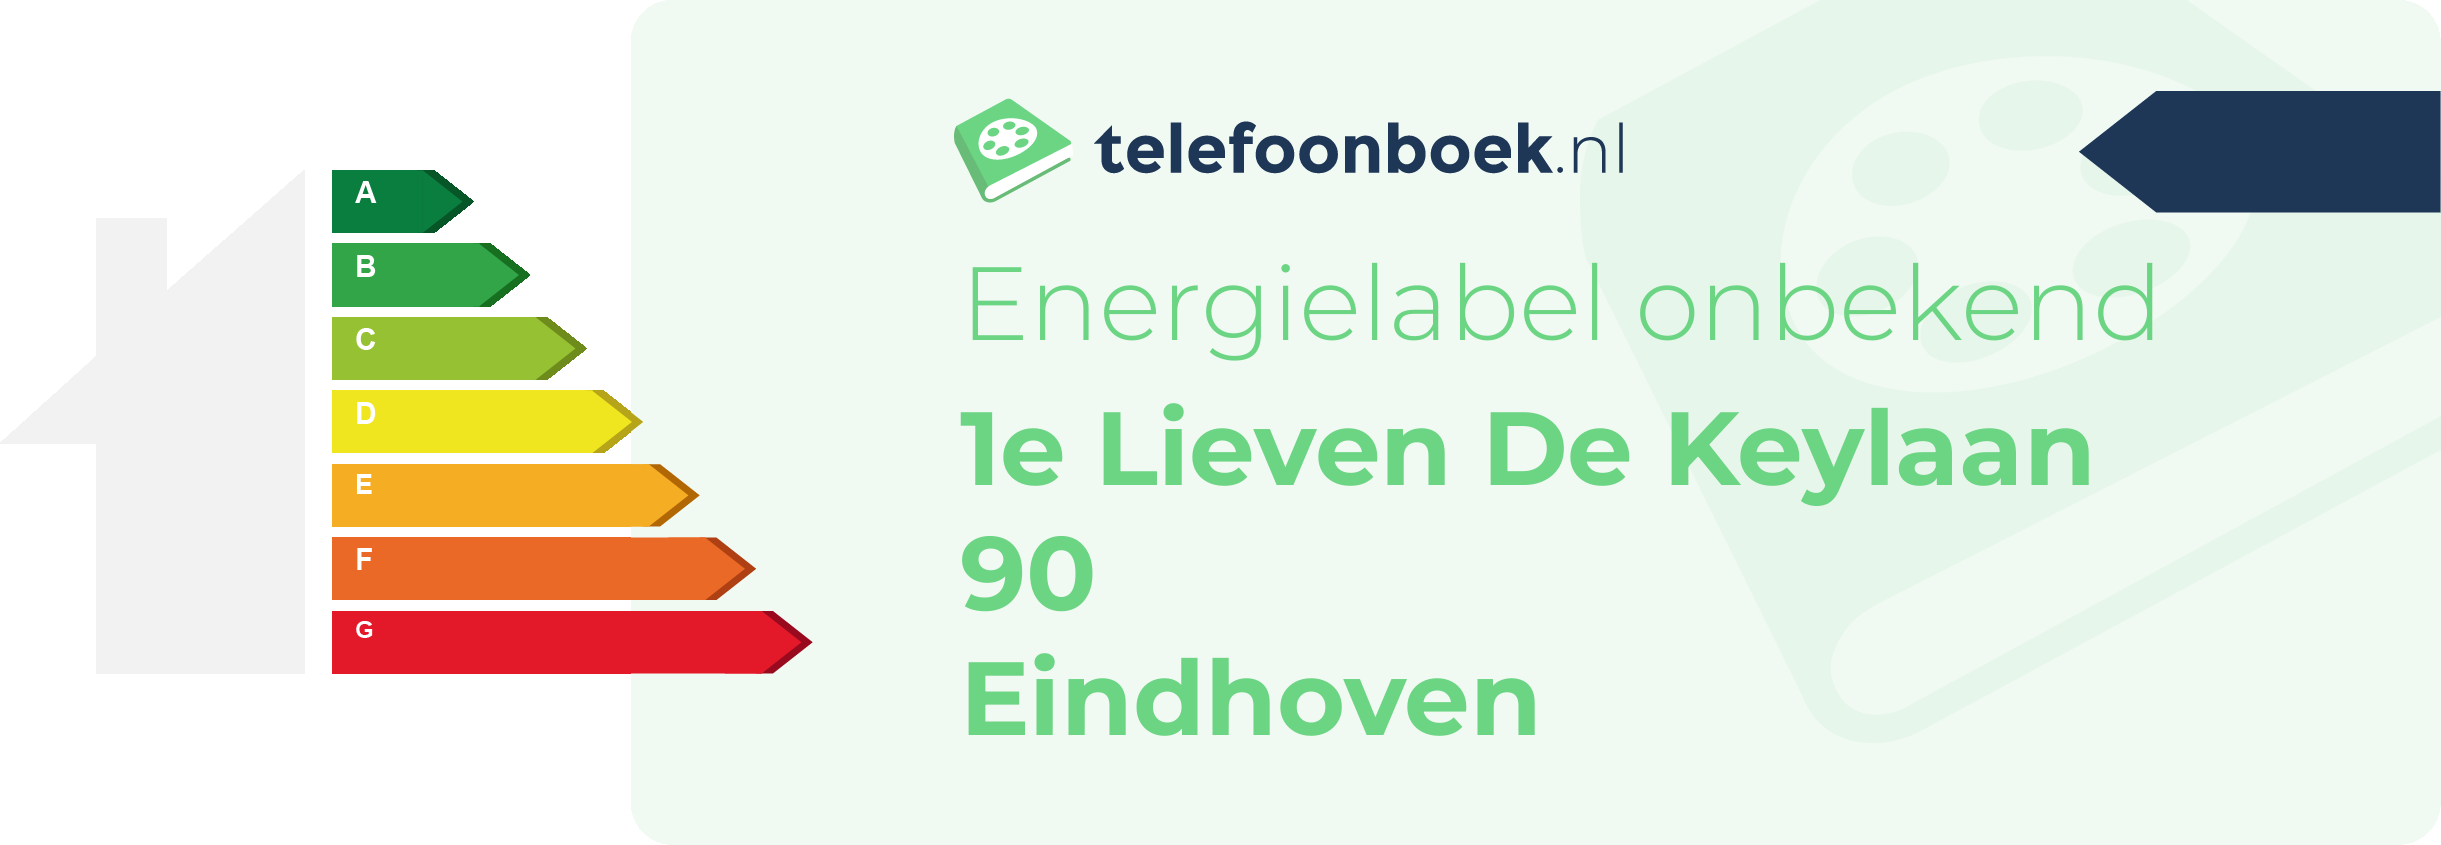 Energielabel 1e Lieven De Keylaan 90 Eindhoven